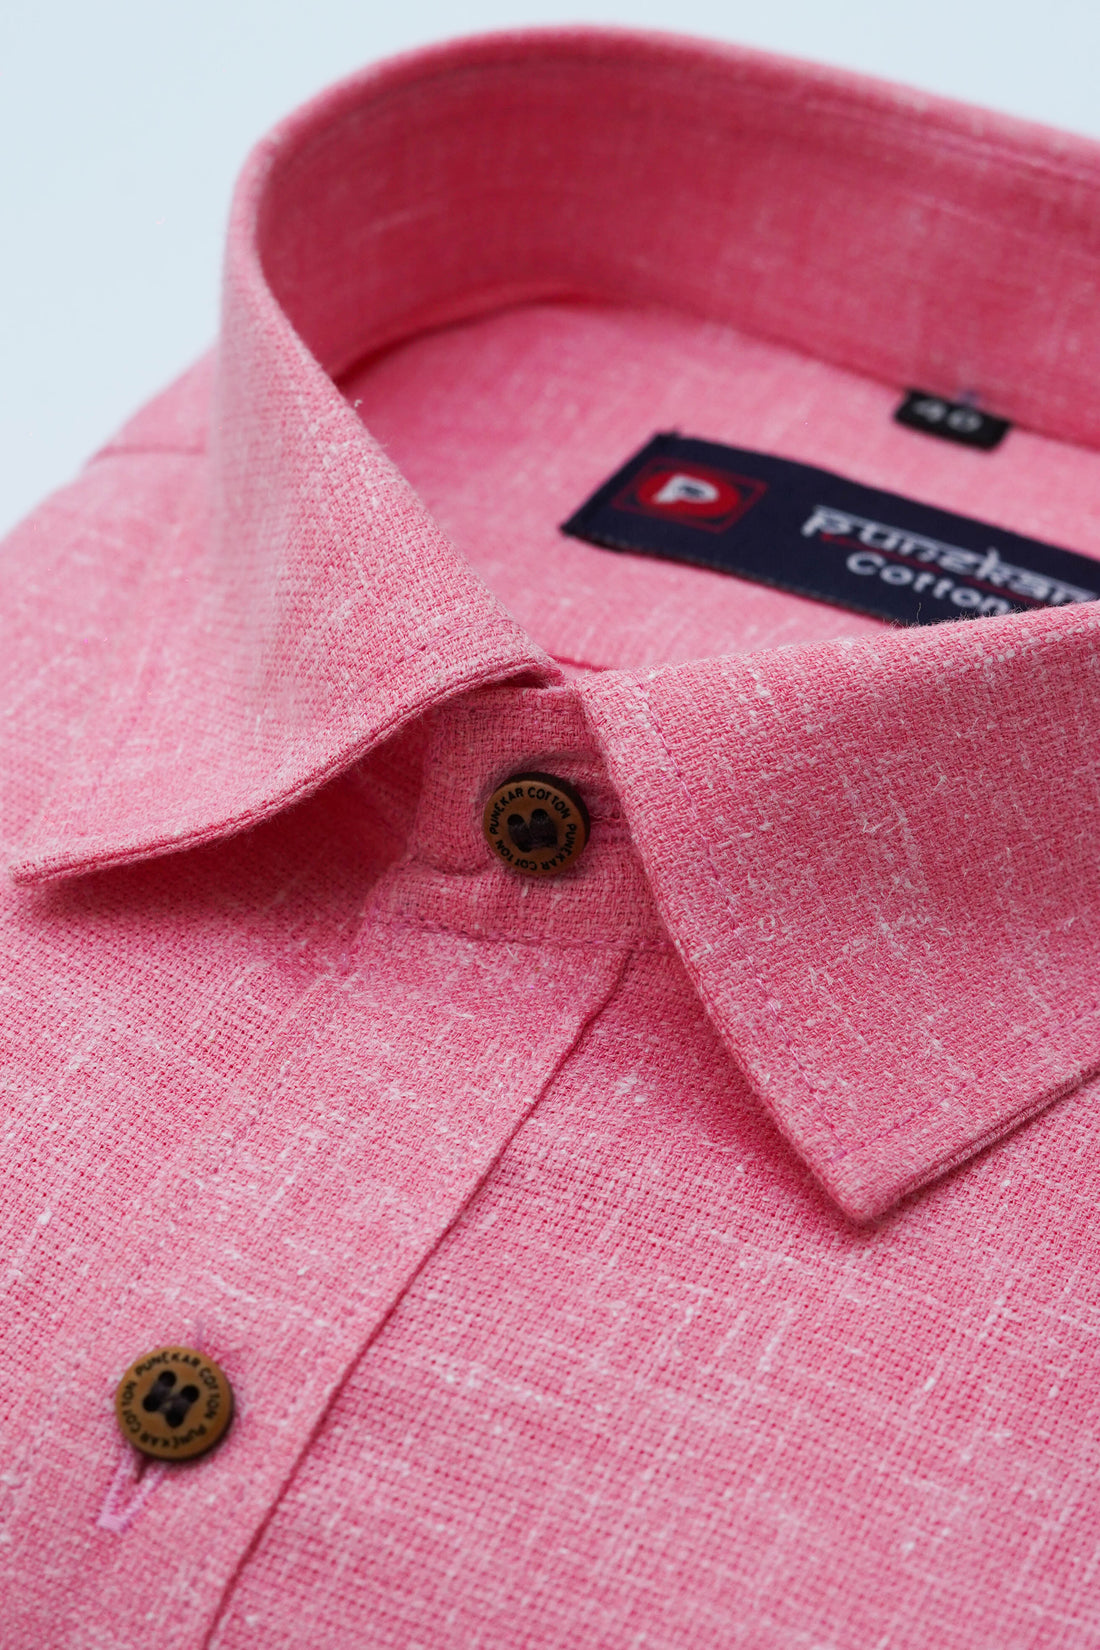 Punekar Cotton Light Pink Color Cotton Linen Formal Shirt for Men&